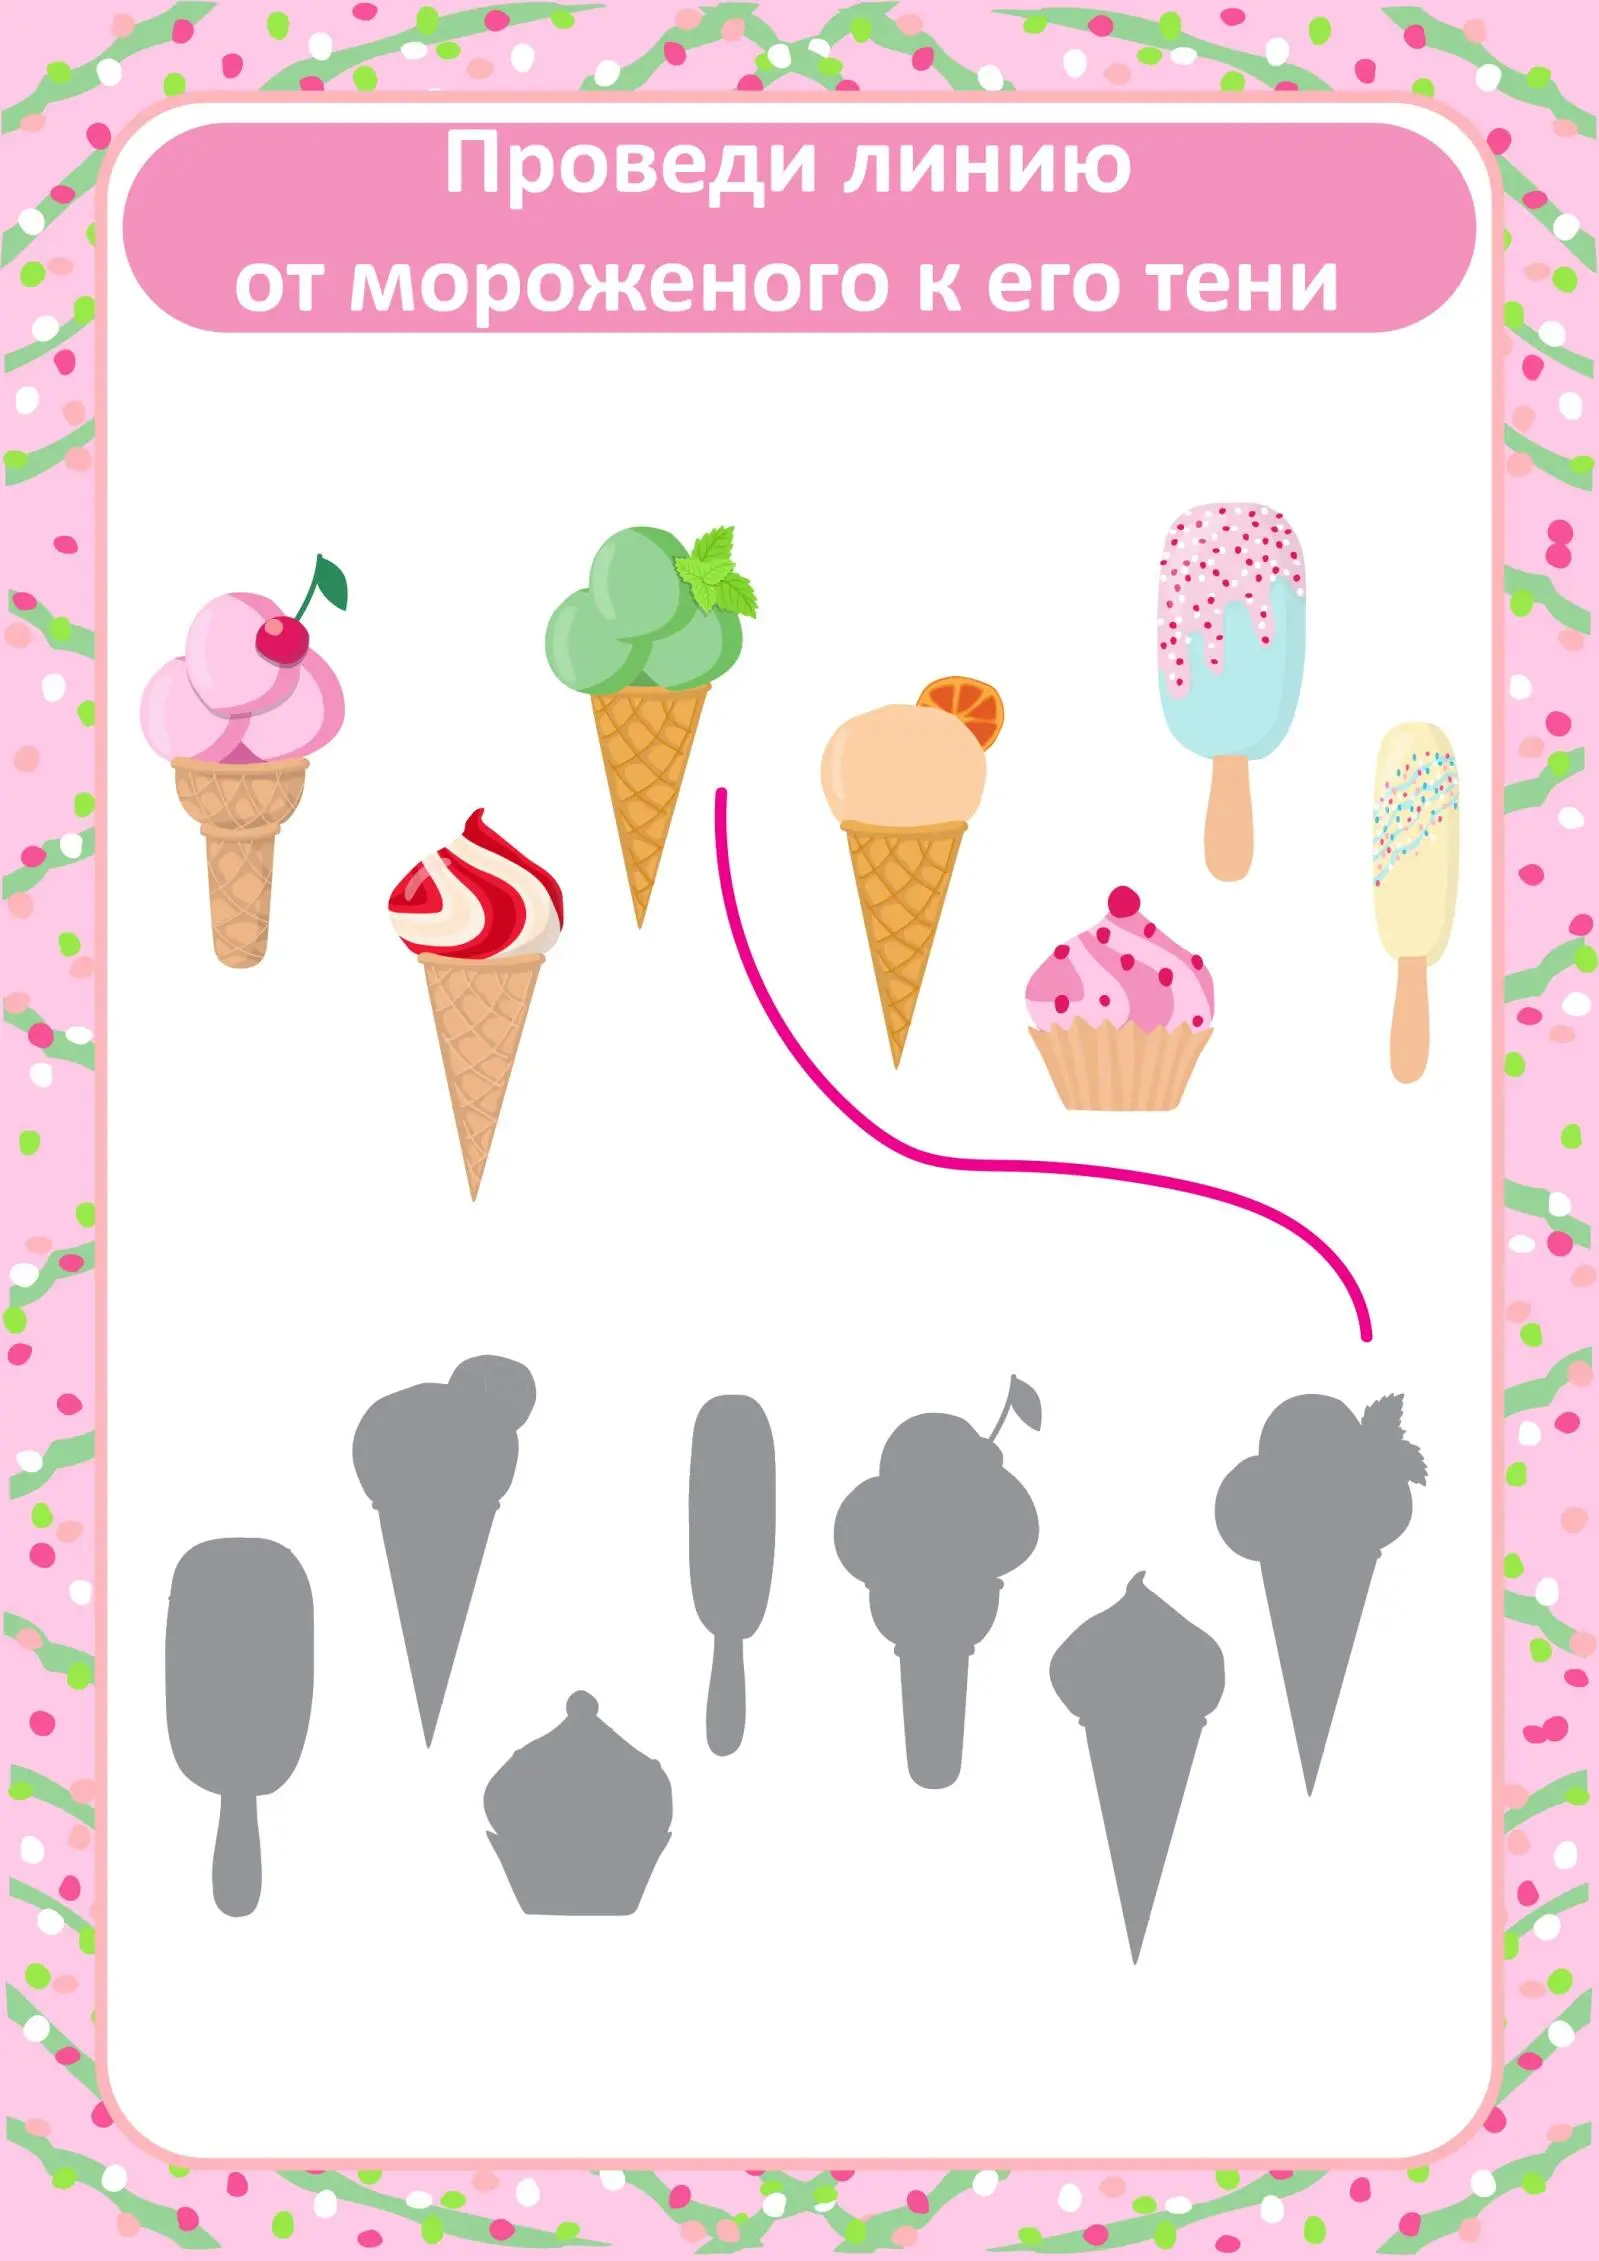 Сосчитай и обведи правильное число Покажи каких рожков с мороженым больше - фото 3